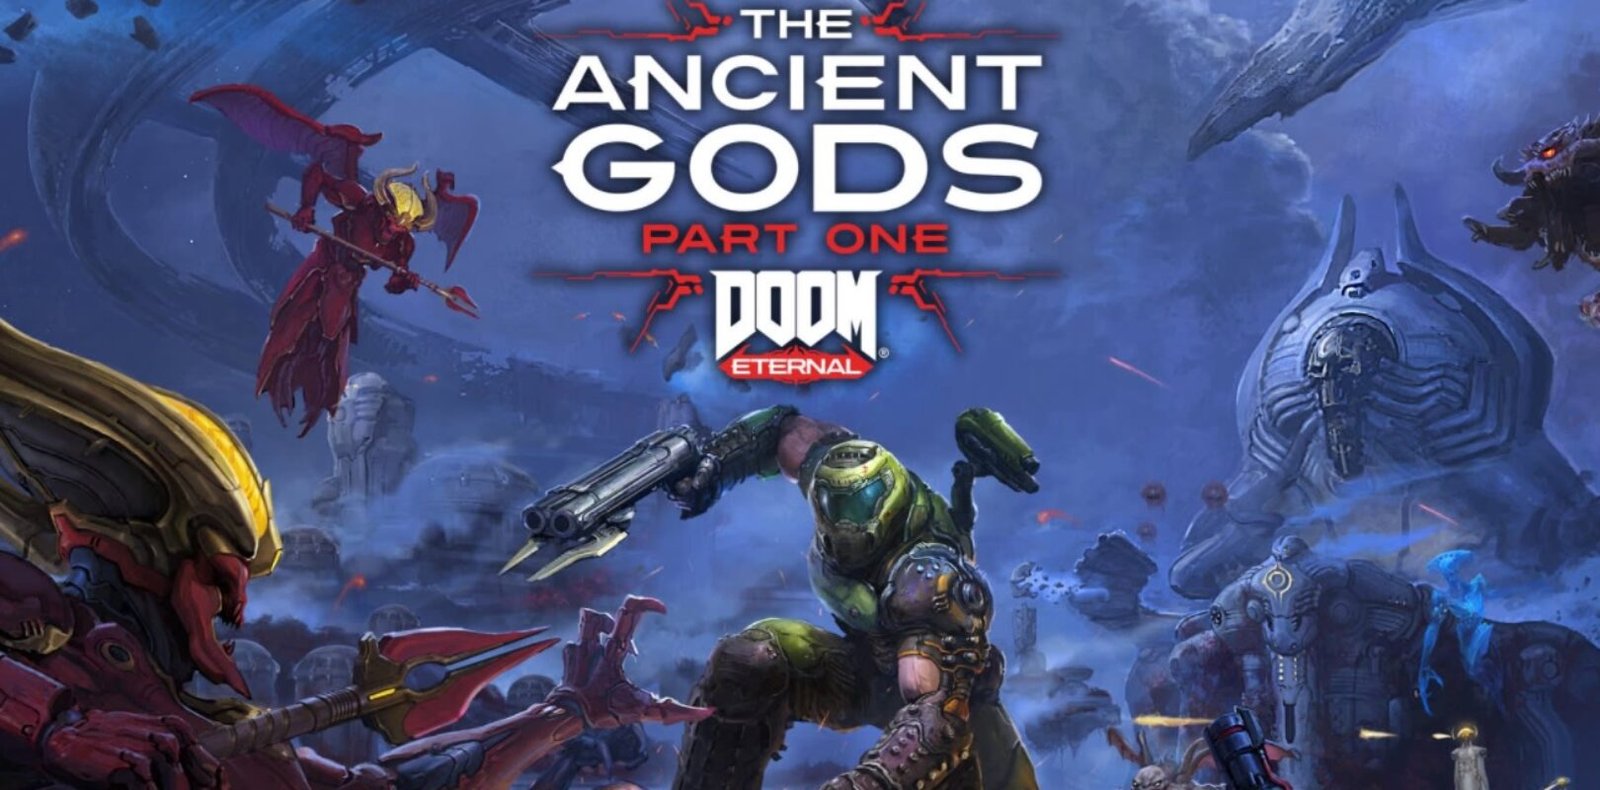 Дум Этернал Нинтендо свитч. Doom Eternal: the Ancient Gods – Part one. Doom Eternal Nintendo Switch. Eternal nintendo switch